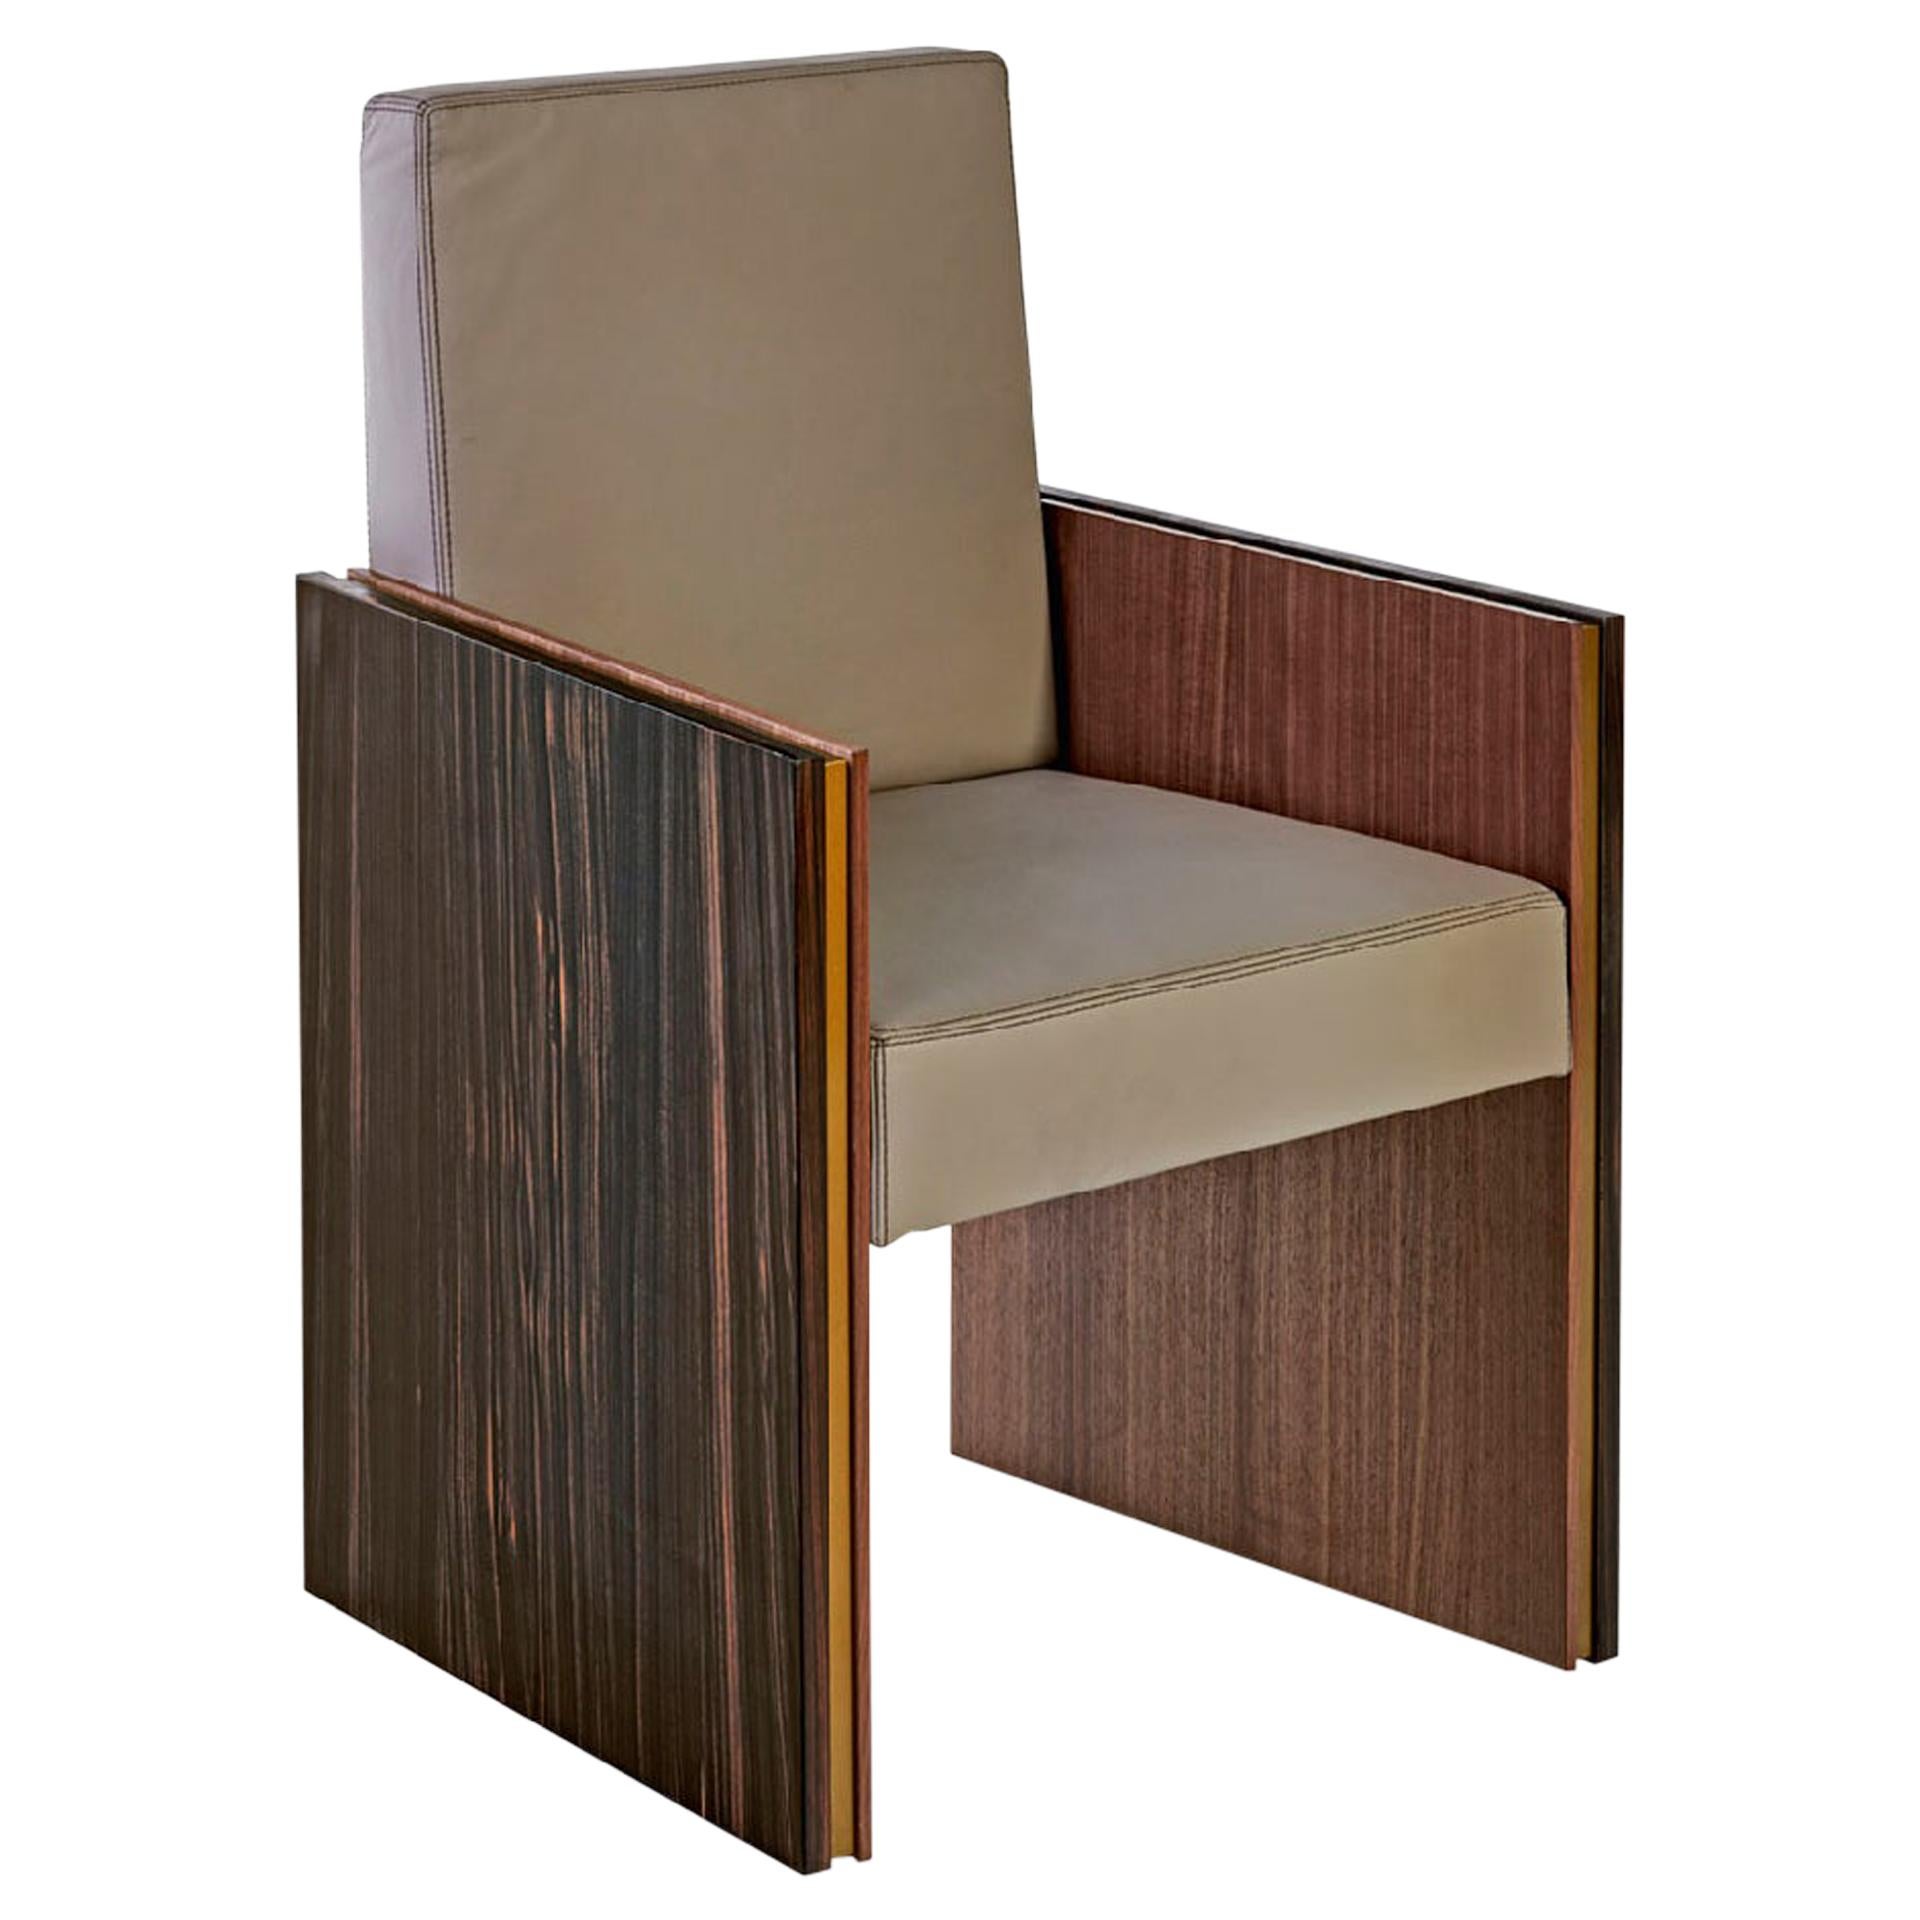 Stuhlgestell aus Holz und Seitenpaneelen mit drei verschiedenen Holzschichten